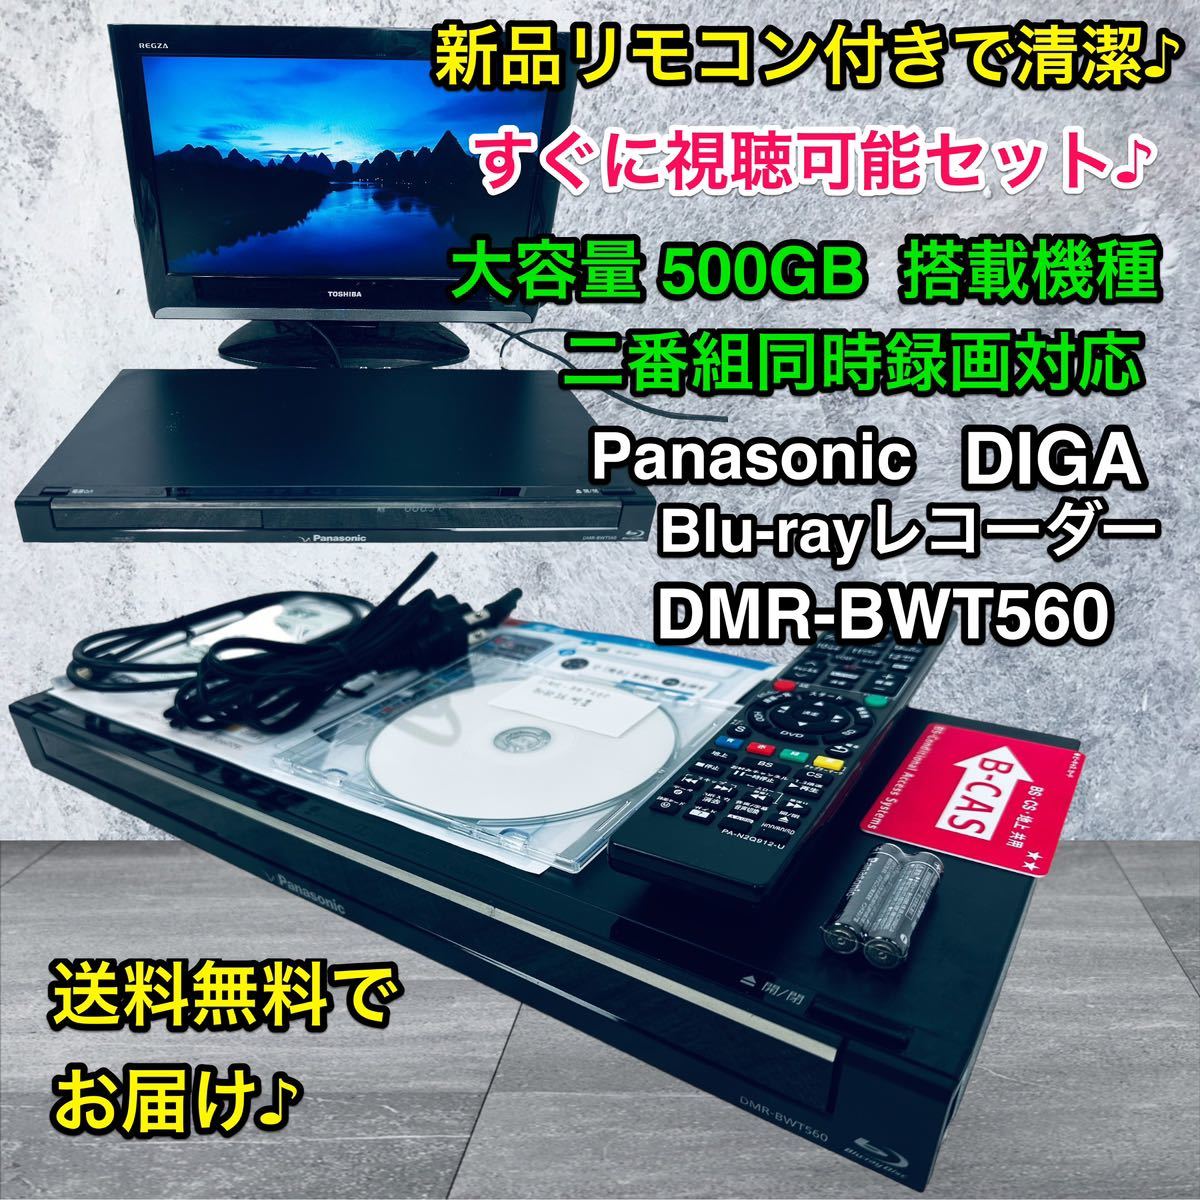 パナソニック ブルーレイディーガ DMR-BWT560 オークション比較 - 価格.com